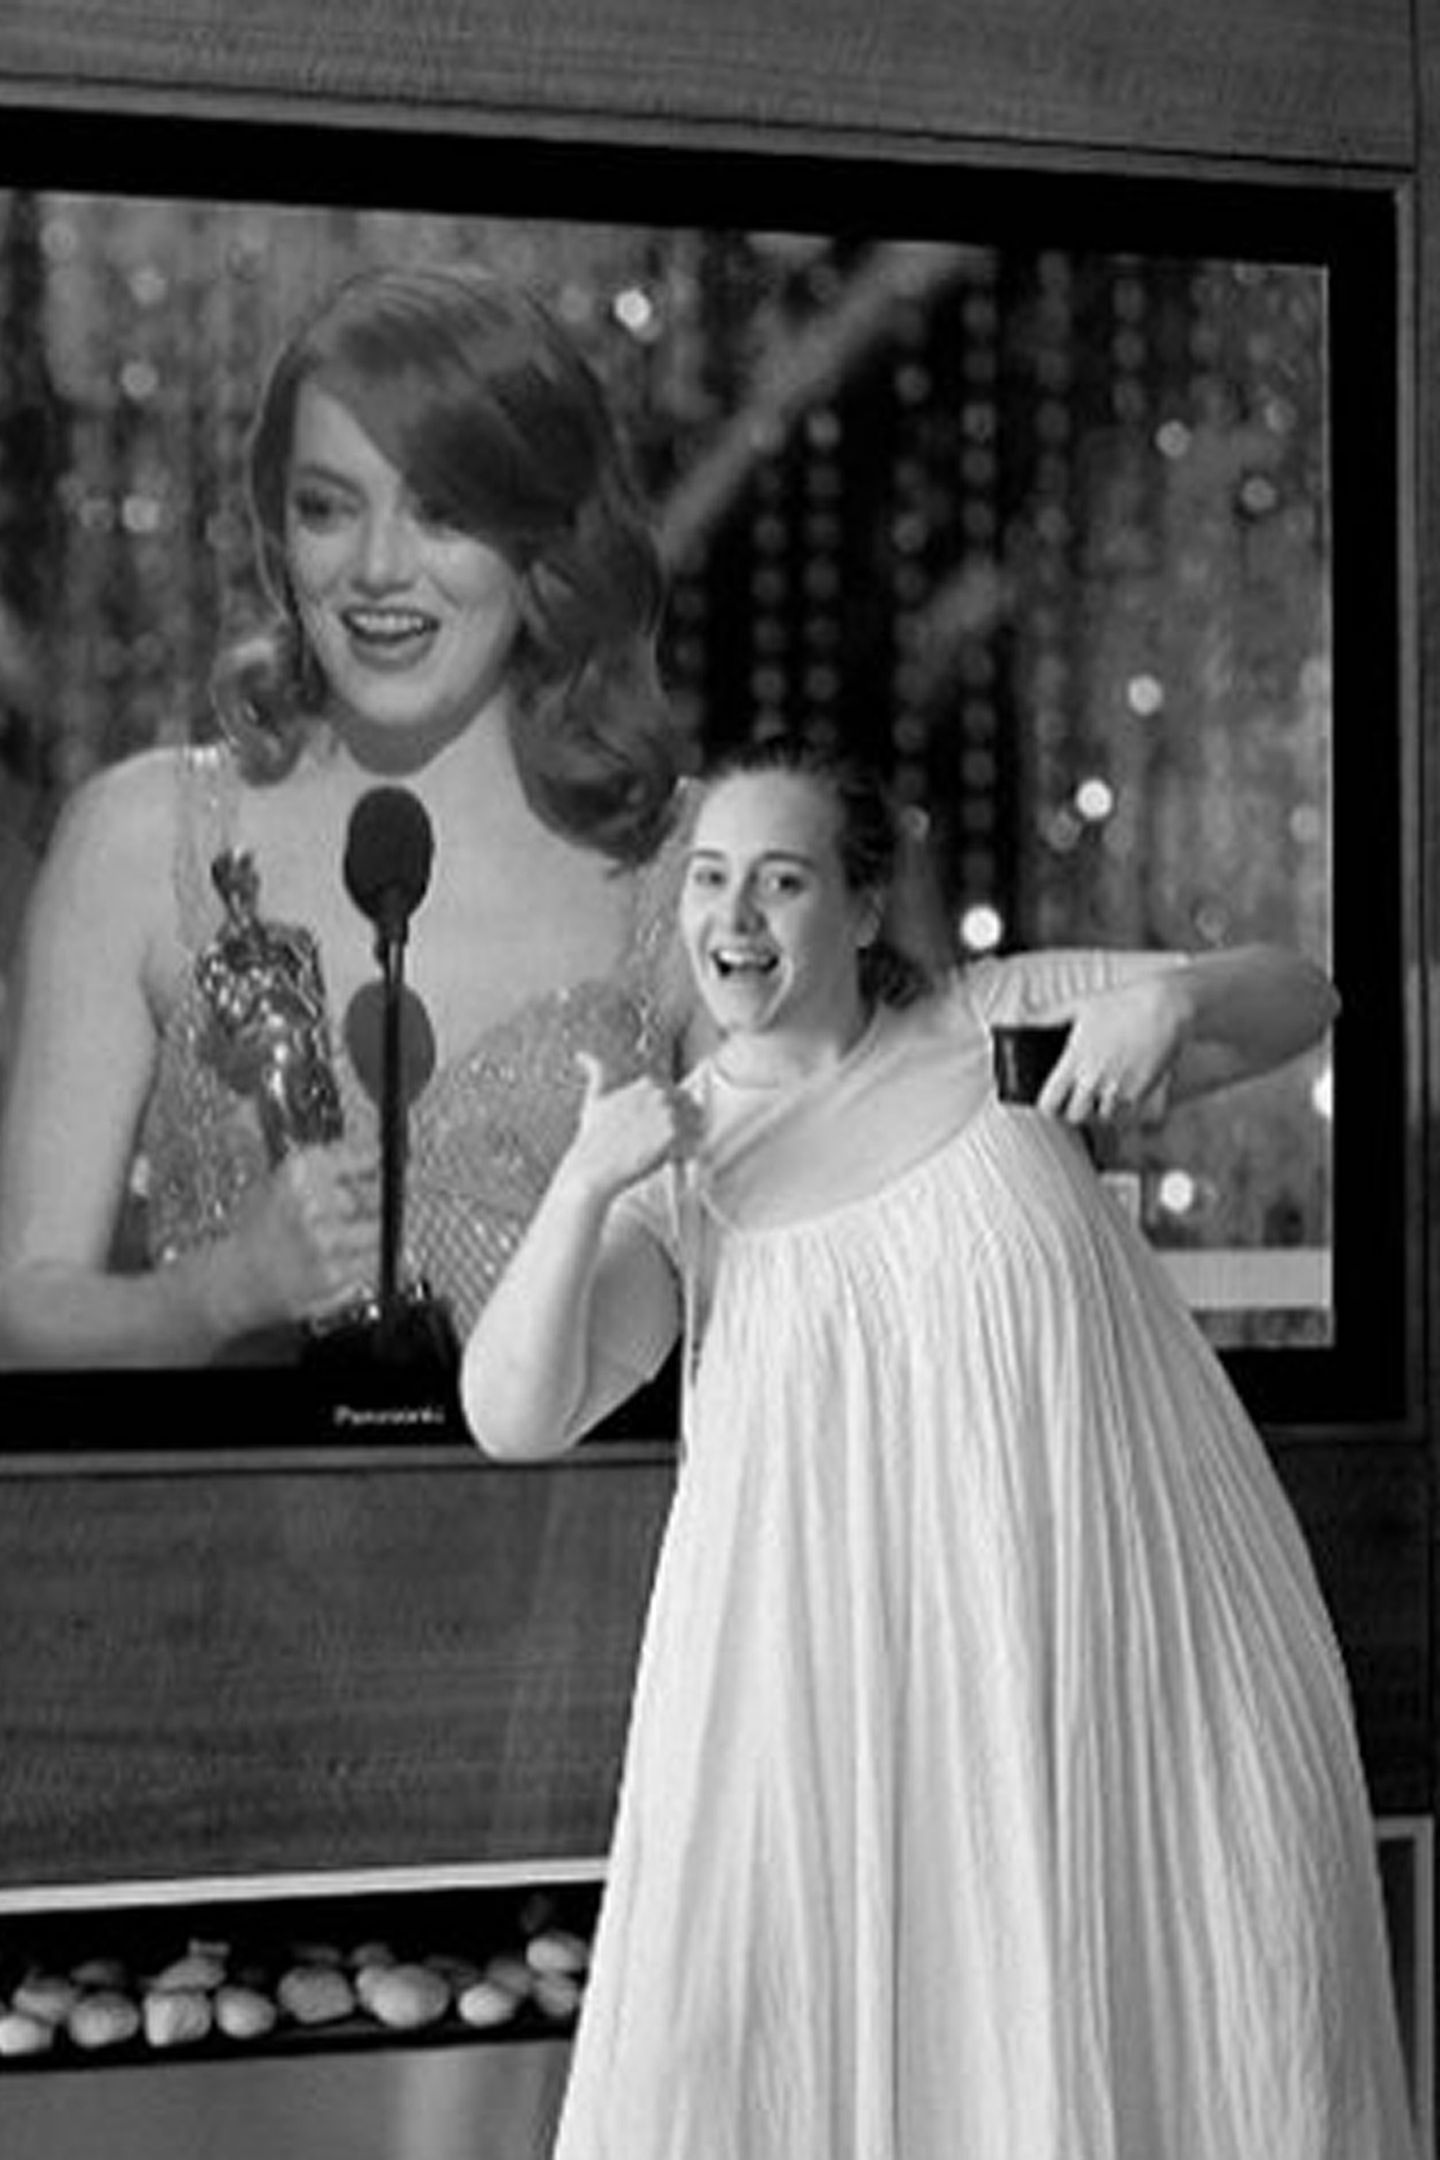 Grüße im Nachthemd: Oscargewinnerin Adele kann zwar nicht selbst bei der Verleihung dabei sein, sendet ihre Glückwünsche an Emma Stone und die Crew des Films "Moonlight" über Instagram von zu Hause aus. "Ah Emma und Moonlight, herzlichen Glückwunsch, so so wunderbar", schreibt sie zu dem witzigen Foto. 